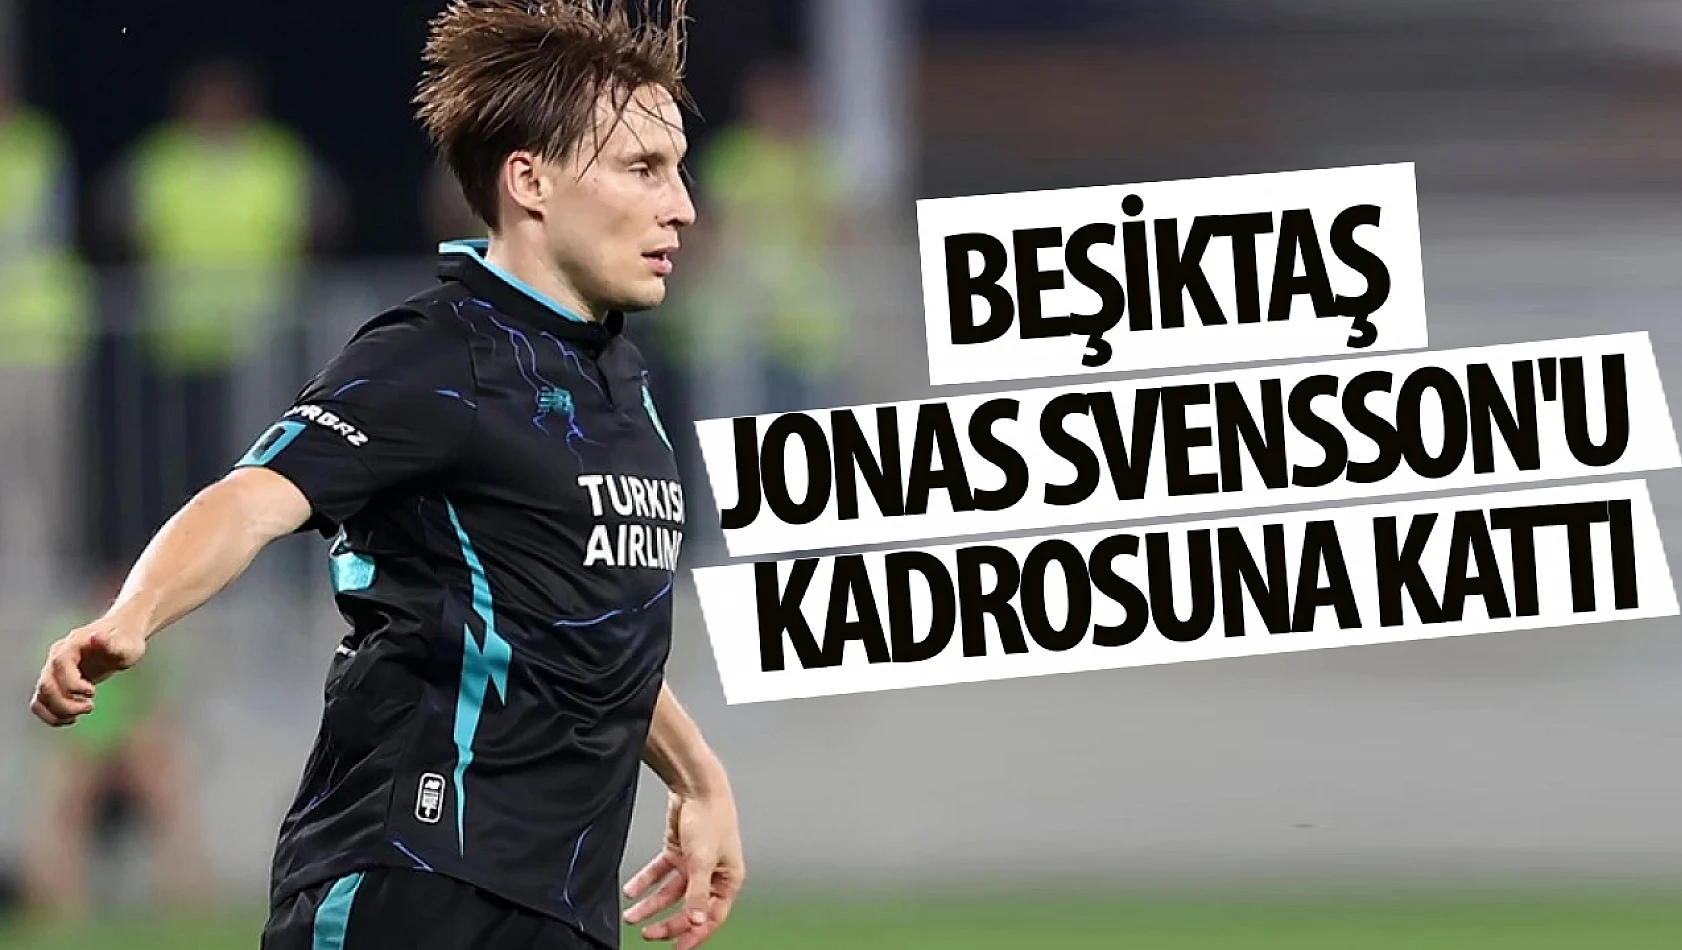 Beşiktaş Jonas Svensson'u kadrosuna kattı!